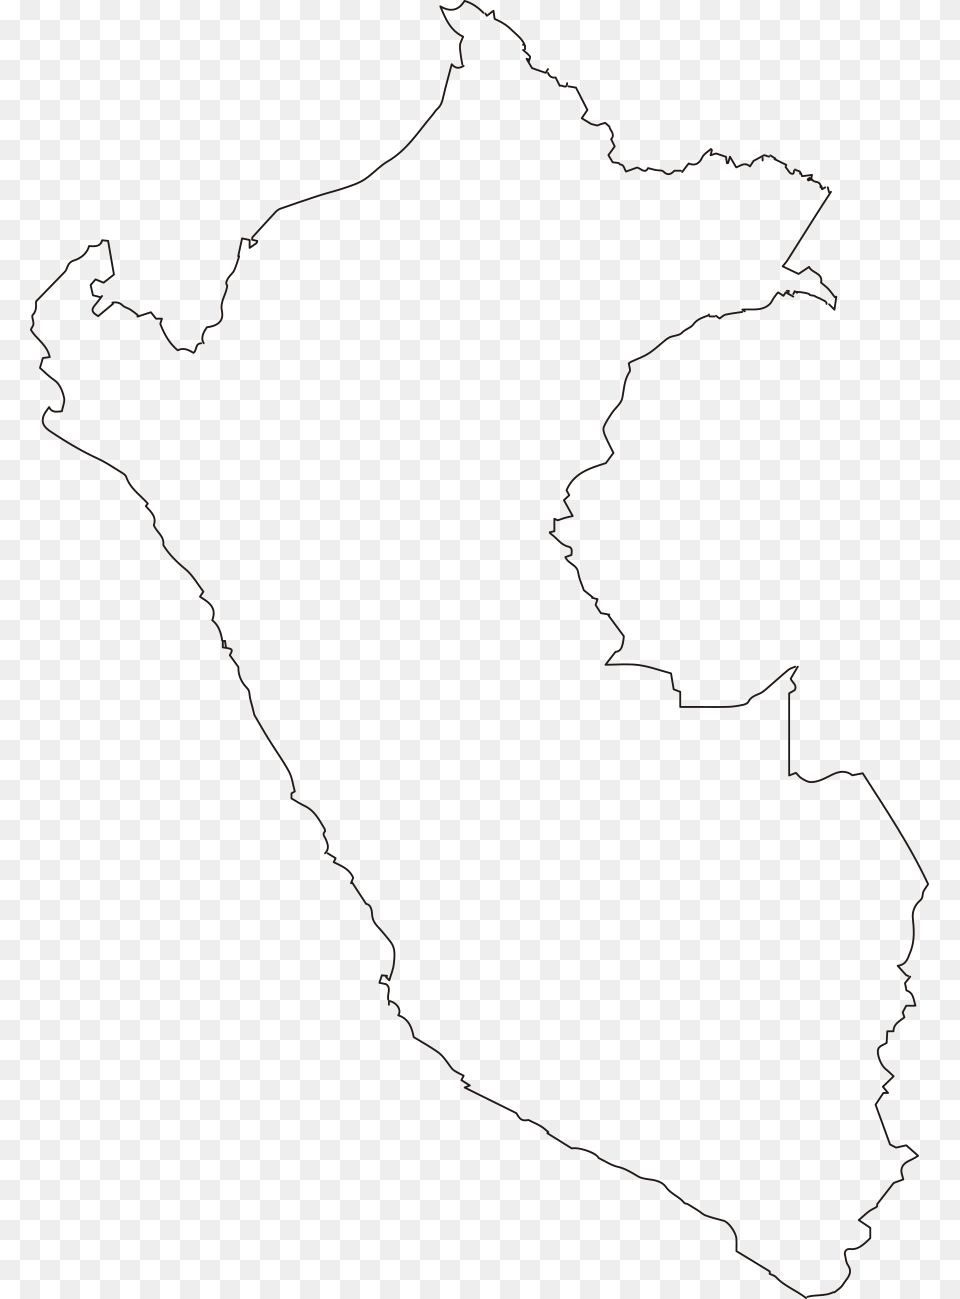 Mapa Del Per Map Del Peru, Chart, Plot, Atlas, Diagram Free Png